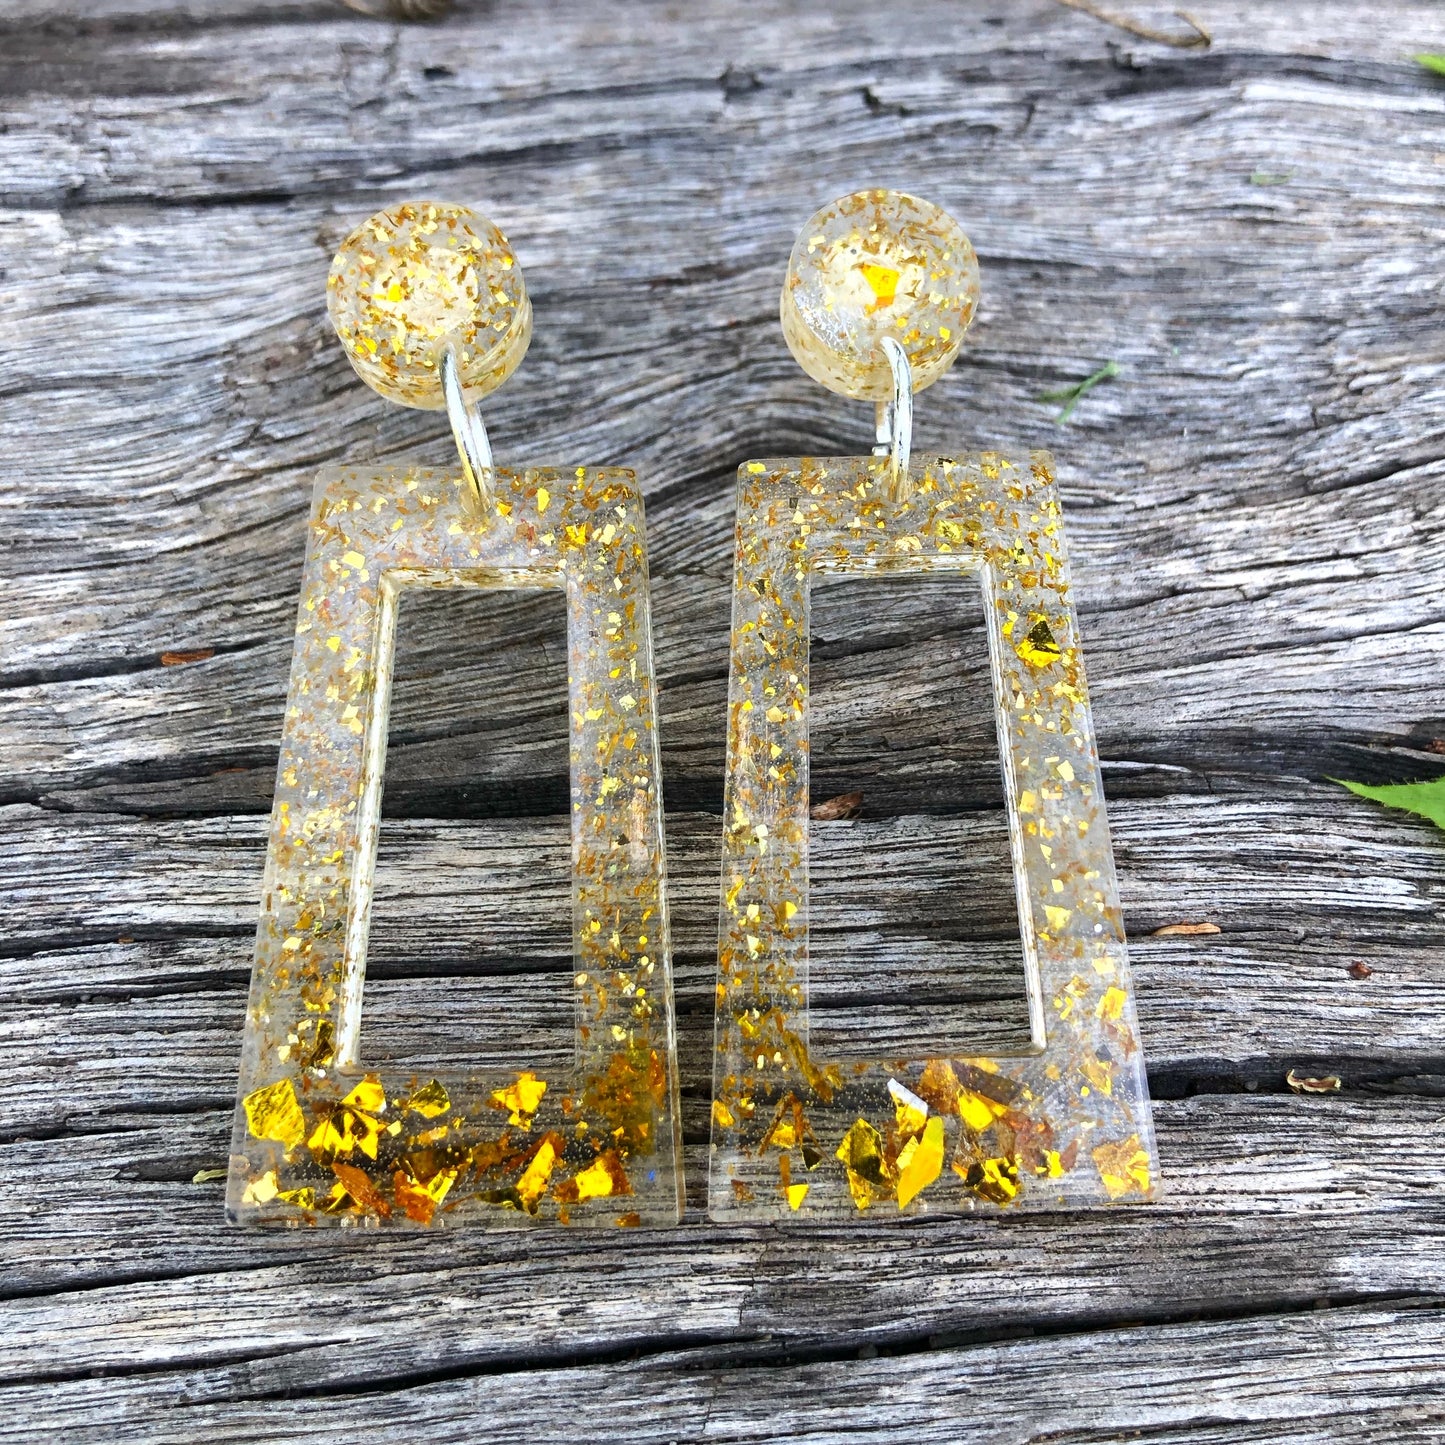 Gold glitter resin earrings